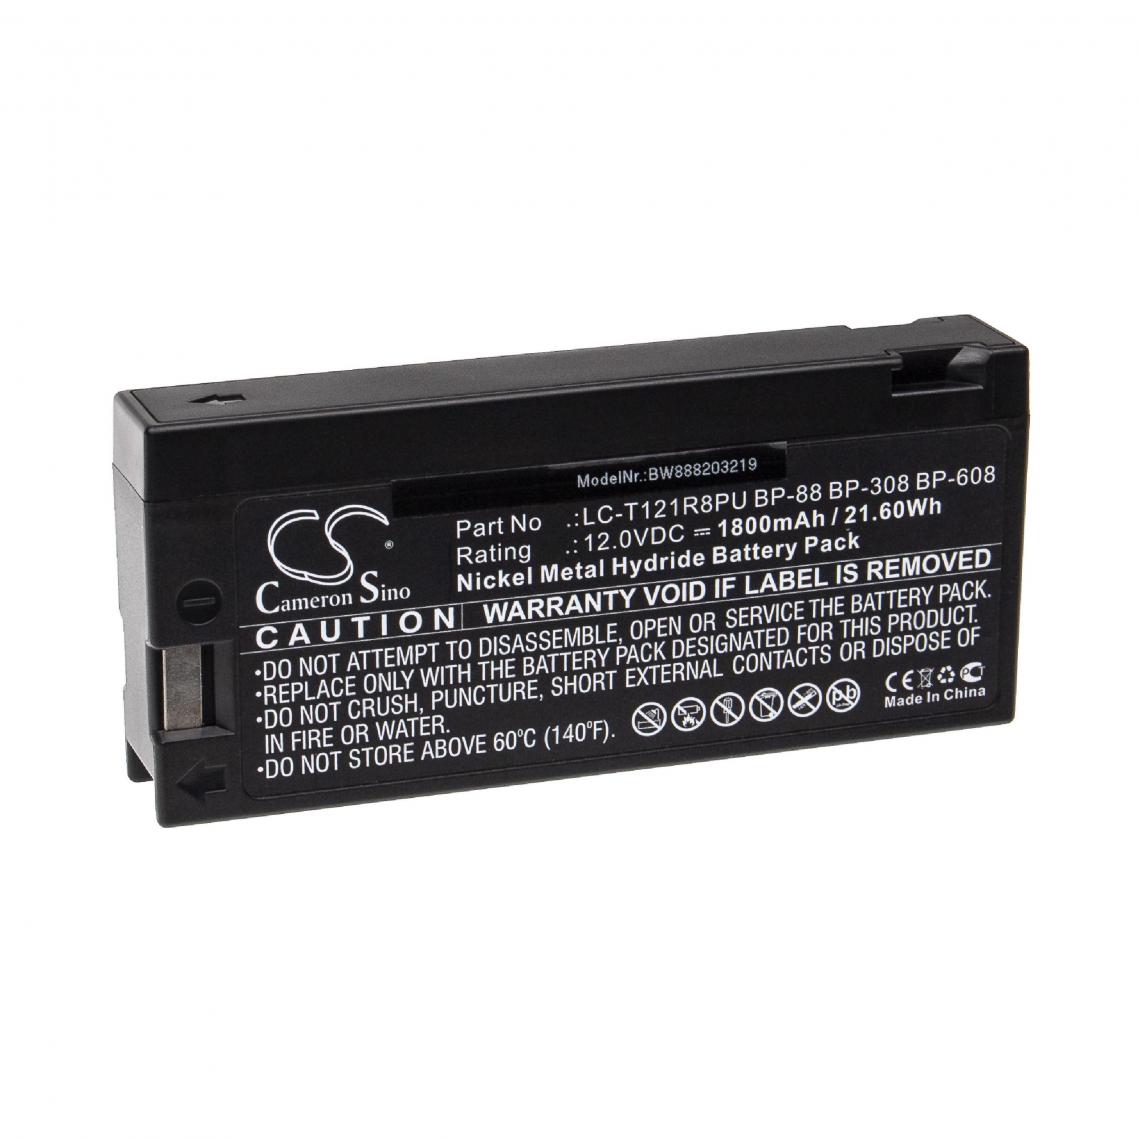 Vhbw - vhbw Batterie compatible avec Colin Medical ADVANTAGE, ASM 5000, BP88-NXT appareil médical (1800mAh, 12V, NiMH) - Piles spécifiques